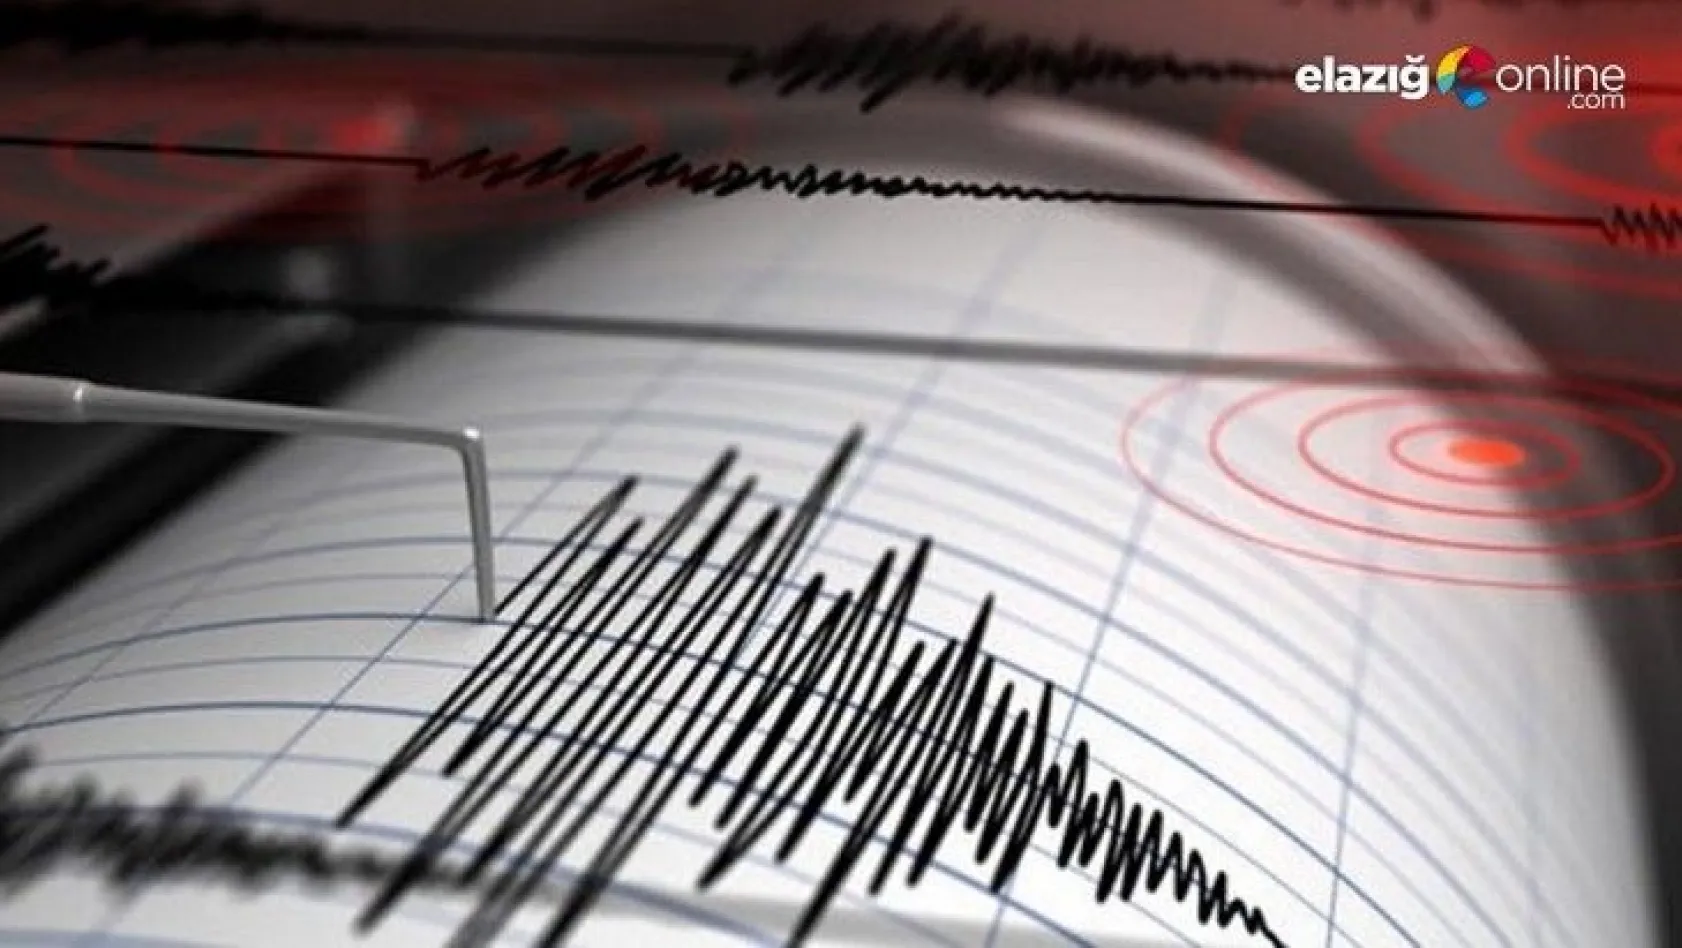 Hakkari'de 3.2 şiddetinde deprem meydana geldi